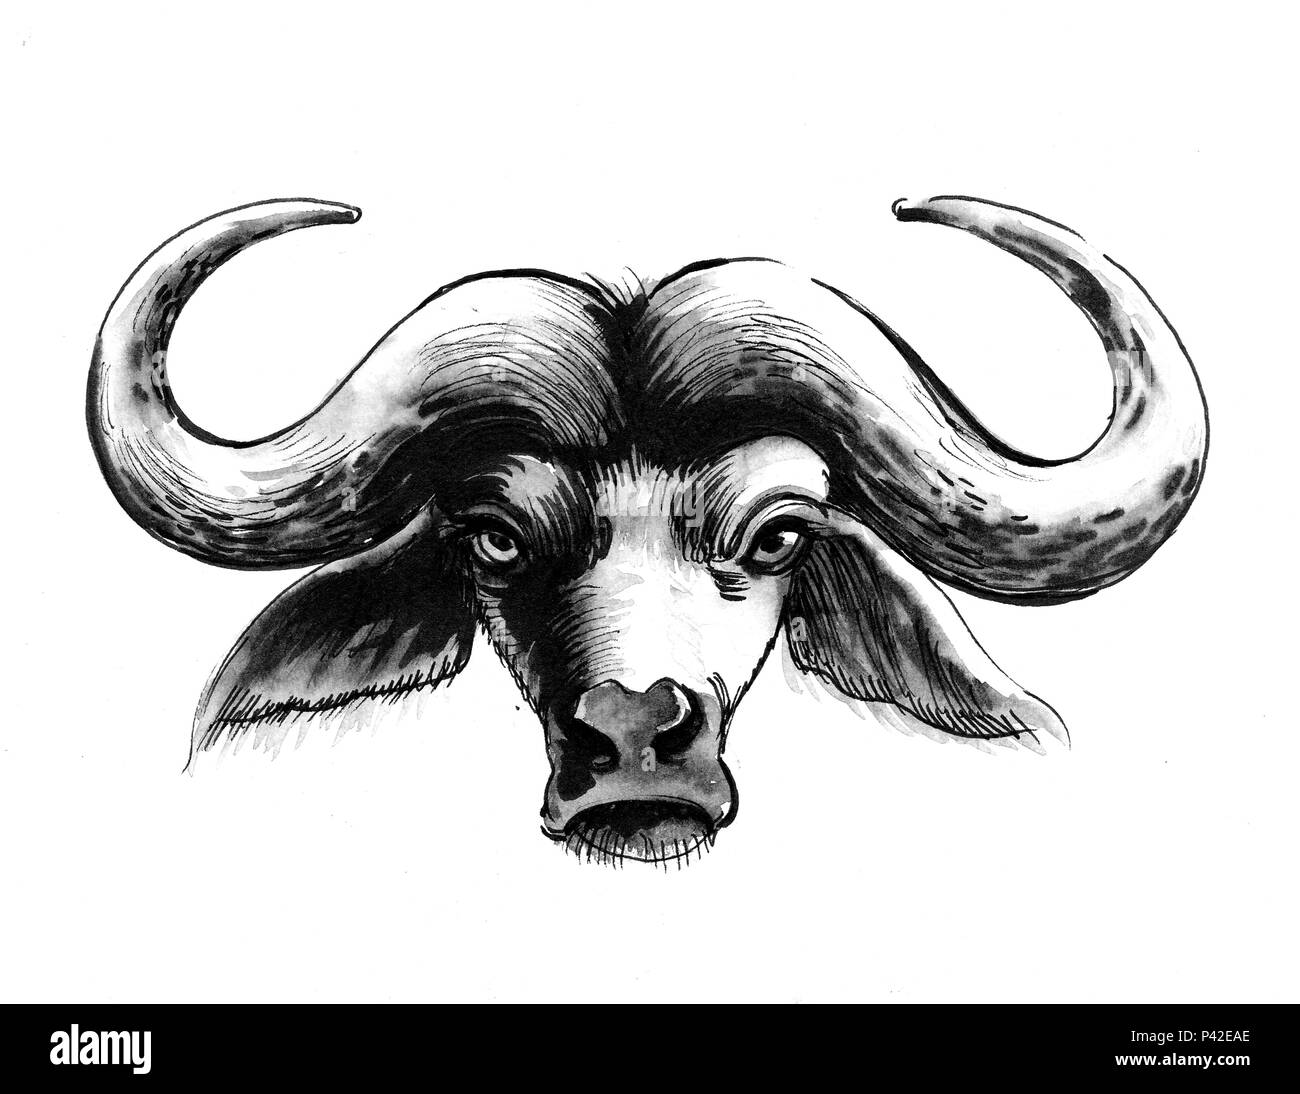 Bull head clip art vectors free download 24,039 editable .ai .eps .svg .cdr  files